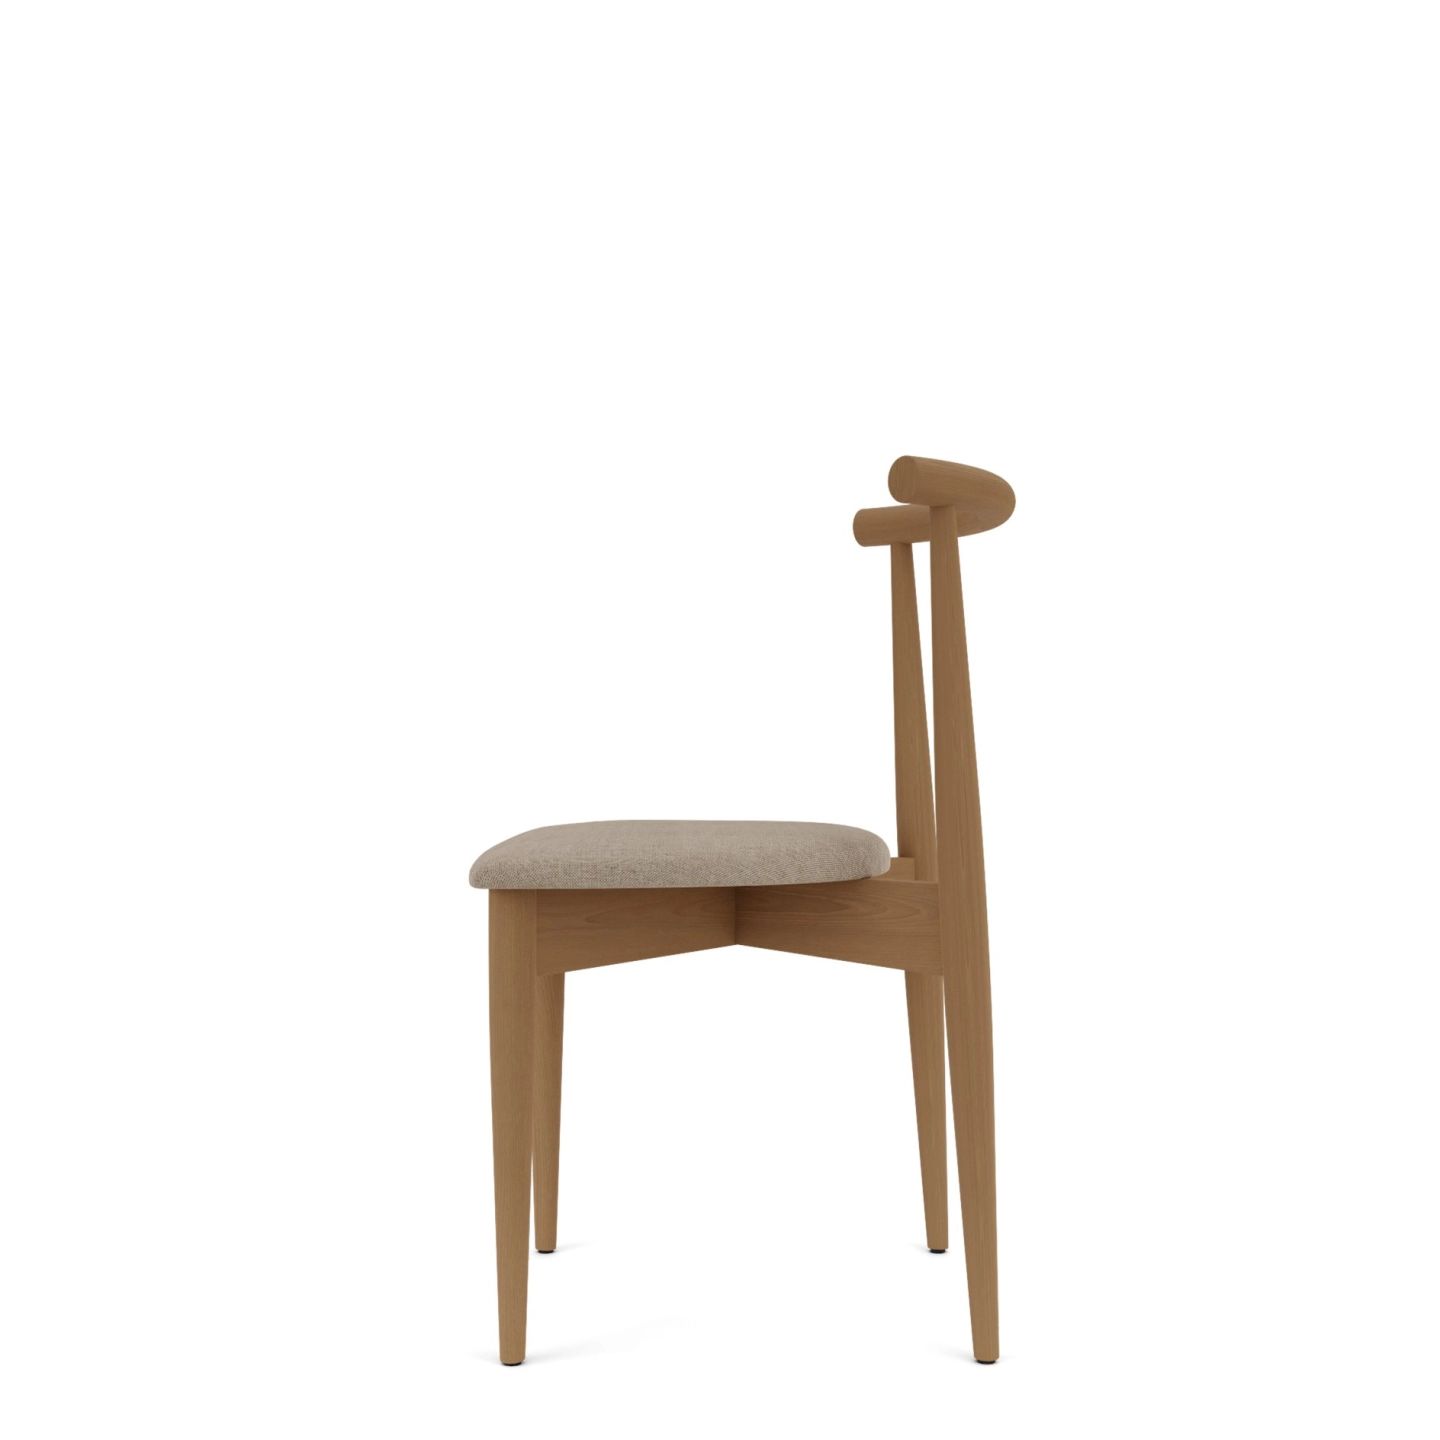 PROXI by Romatti chair